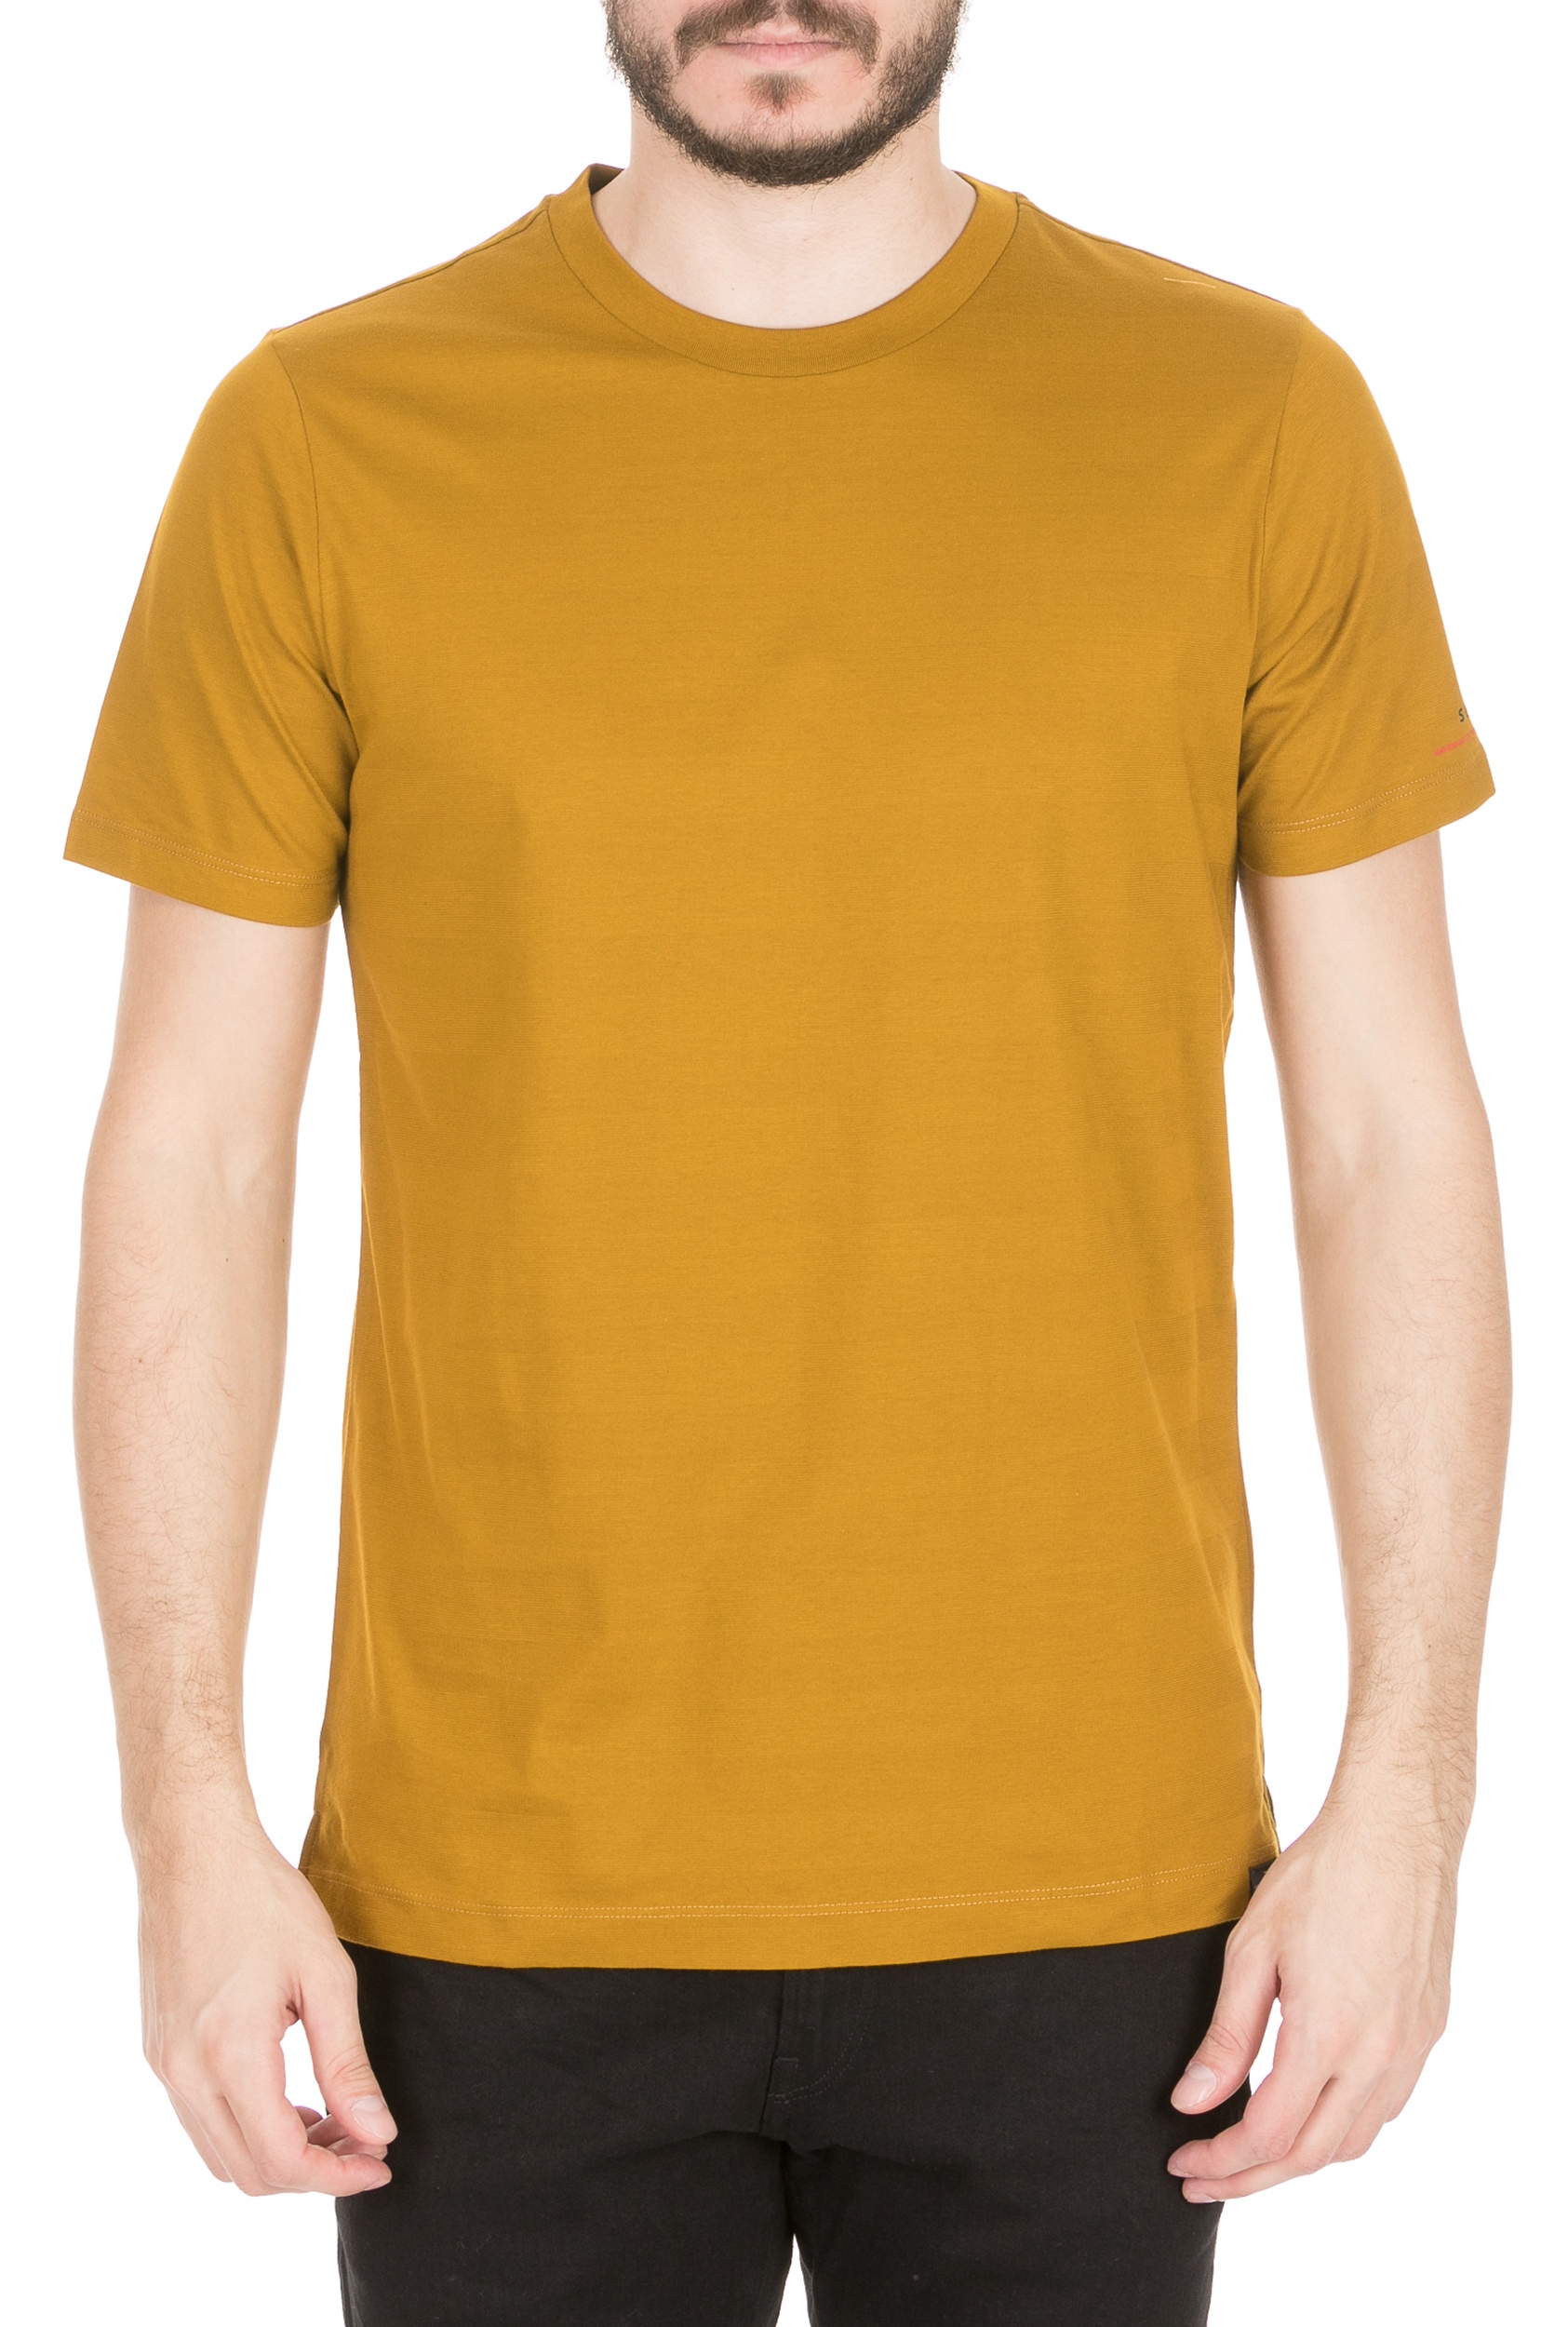 Ανδρικά/Ρούχα/Μπλούζες/Κοντομάνικες SCOTCH & SODA - Ανδρική μπλούζα SCOTCH & SODA κίτρινη